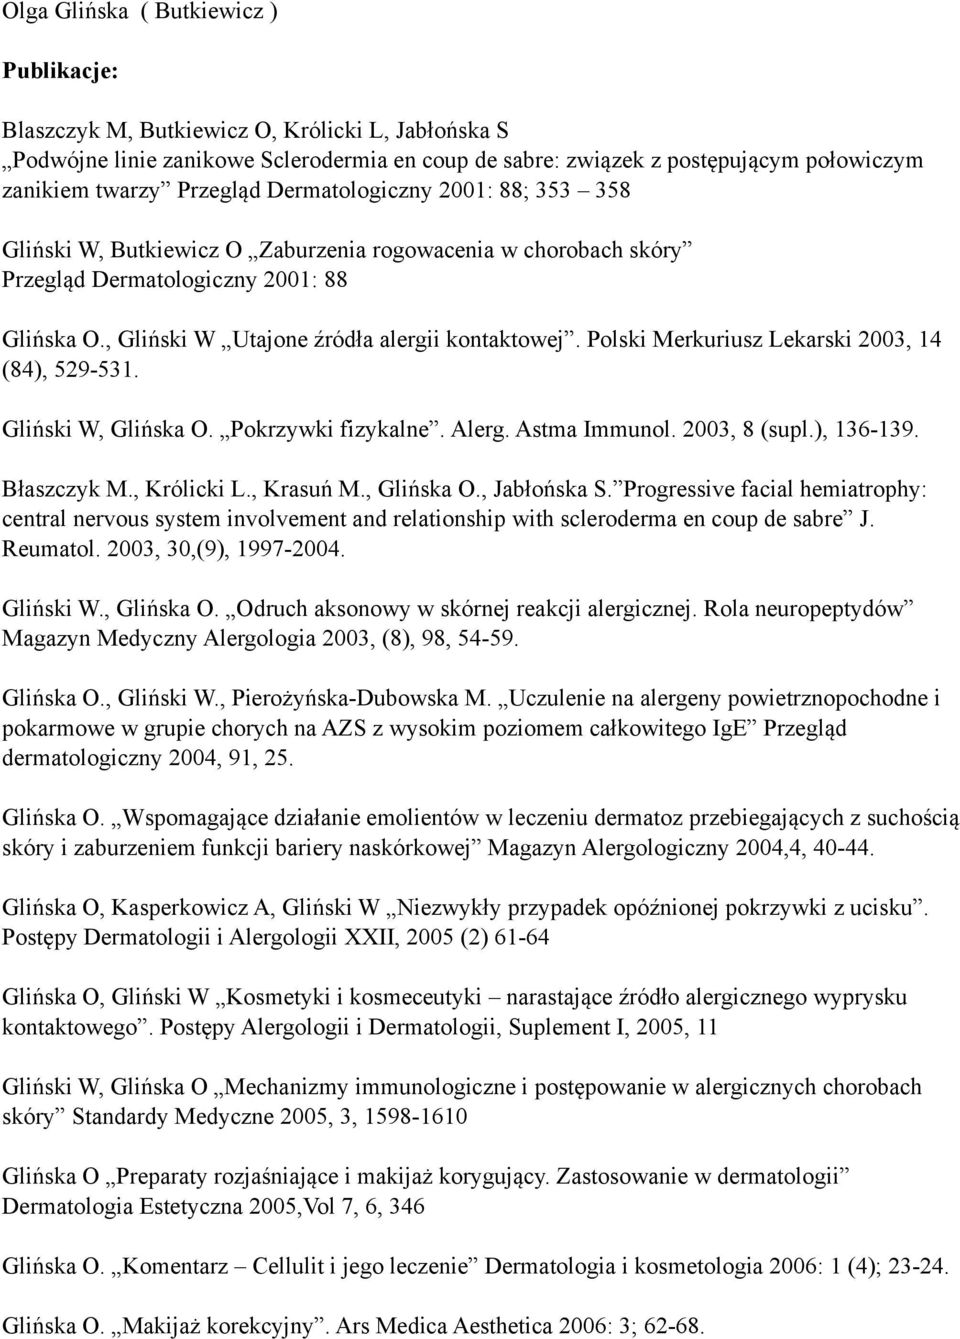 Polski Merkuriusz Lekarski 2003, 14 (84), 529-531. Gliński W, Glińska O. Pokrzywki fizykalne. Alerg. Astma Immunol. 2003, 8 (supl.), 136-139. Błaszczyk M., Królicki L., Krasuń M., Glińska O., Jabłońska S.